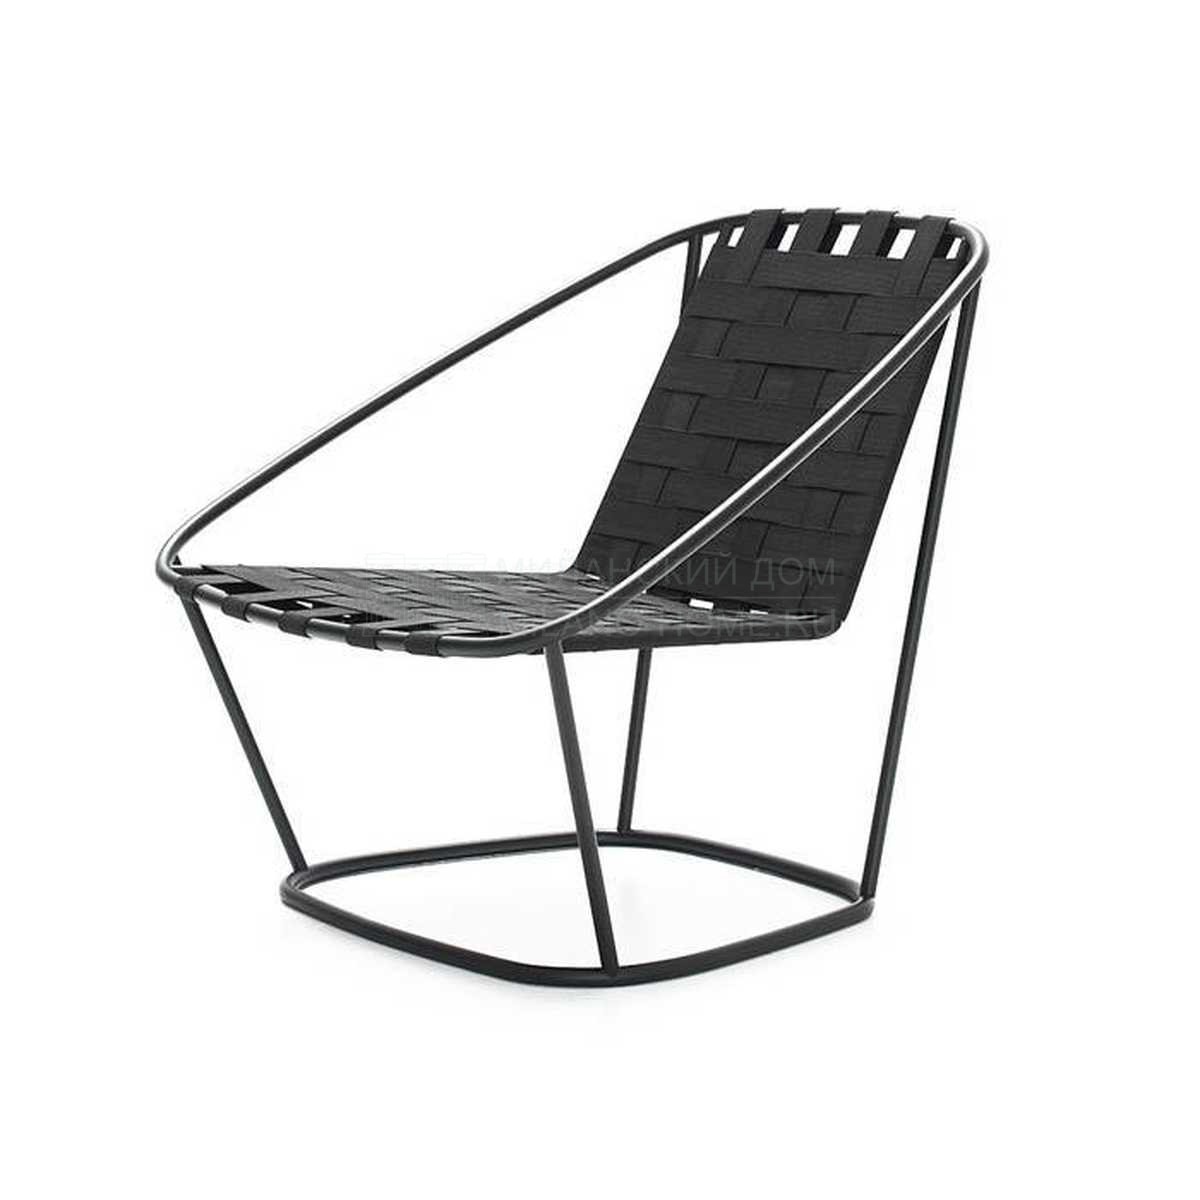 Кресло Cloud armchair outdoor из Италии фабрики ARFLEX